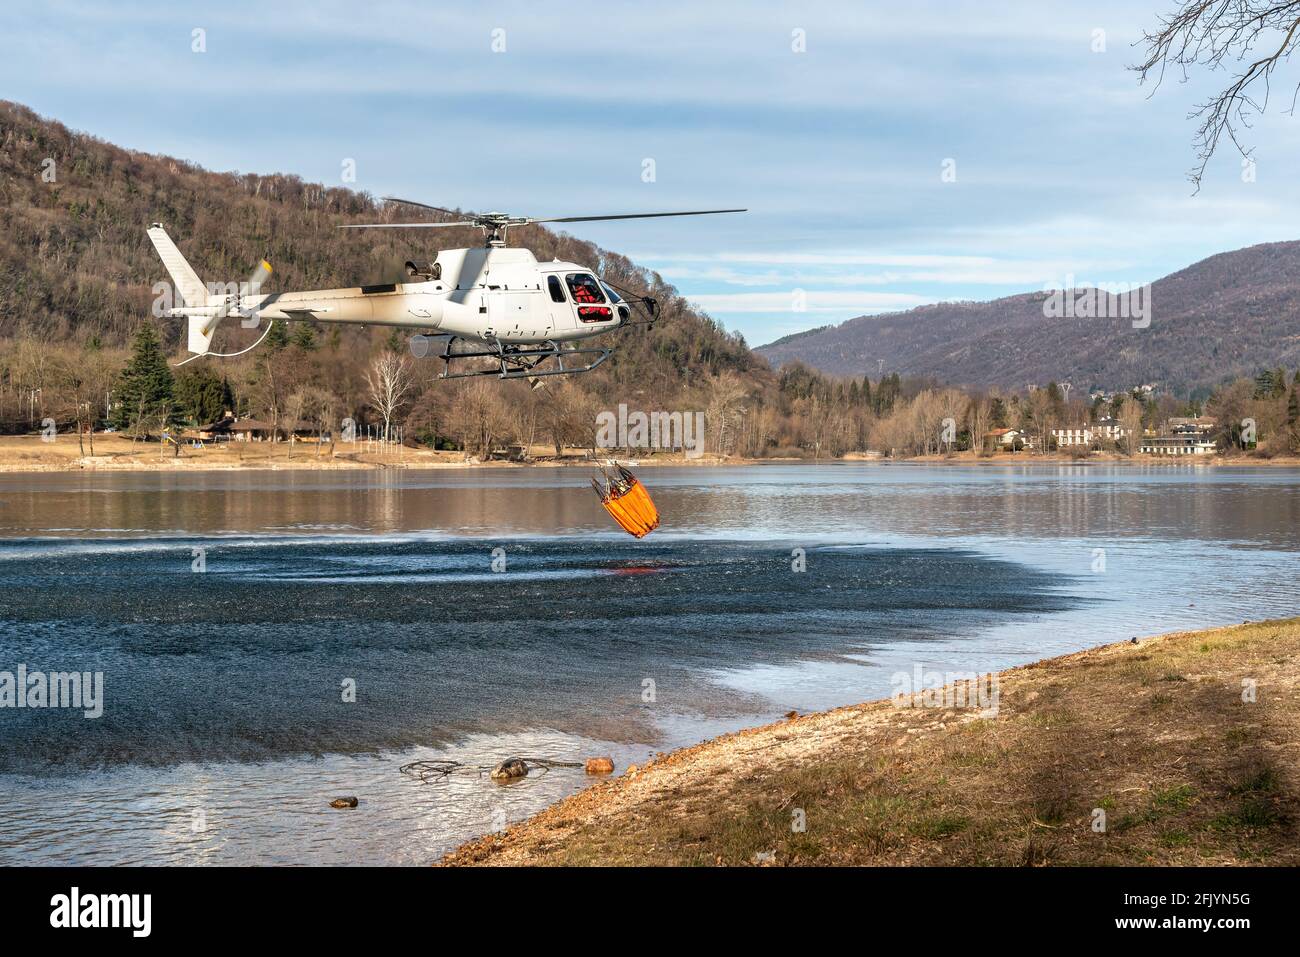 El helicóptero carga agua desde el lago Ghirla para extinguir las llamas de la montaña en Valganna, Italia. La lucha contra los incendios forestales. Foto de stock